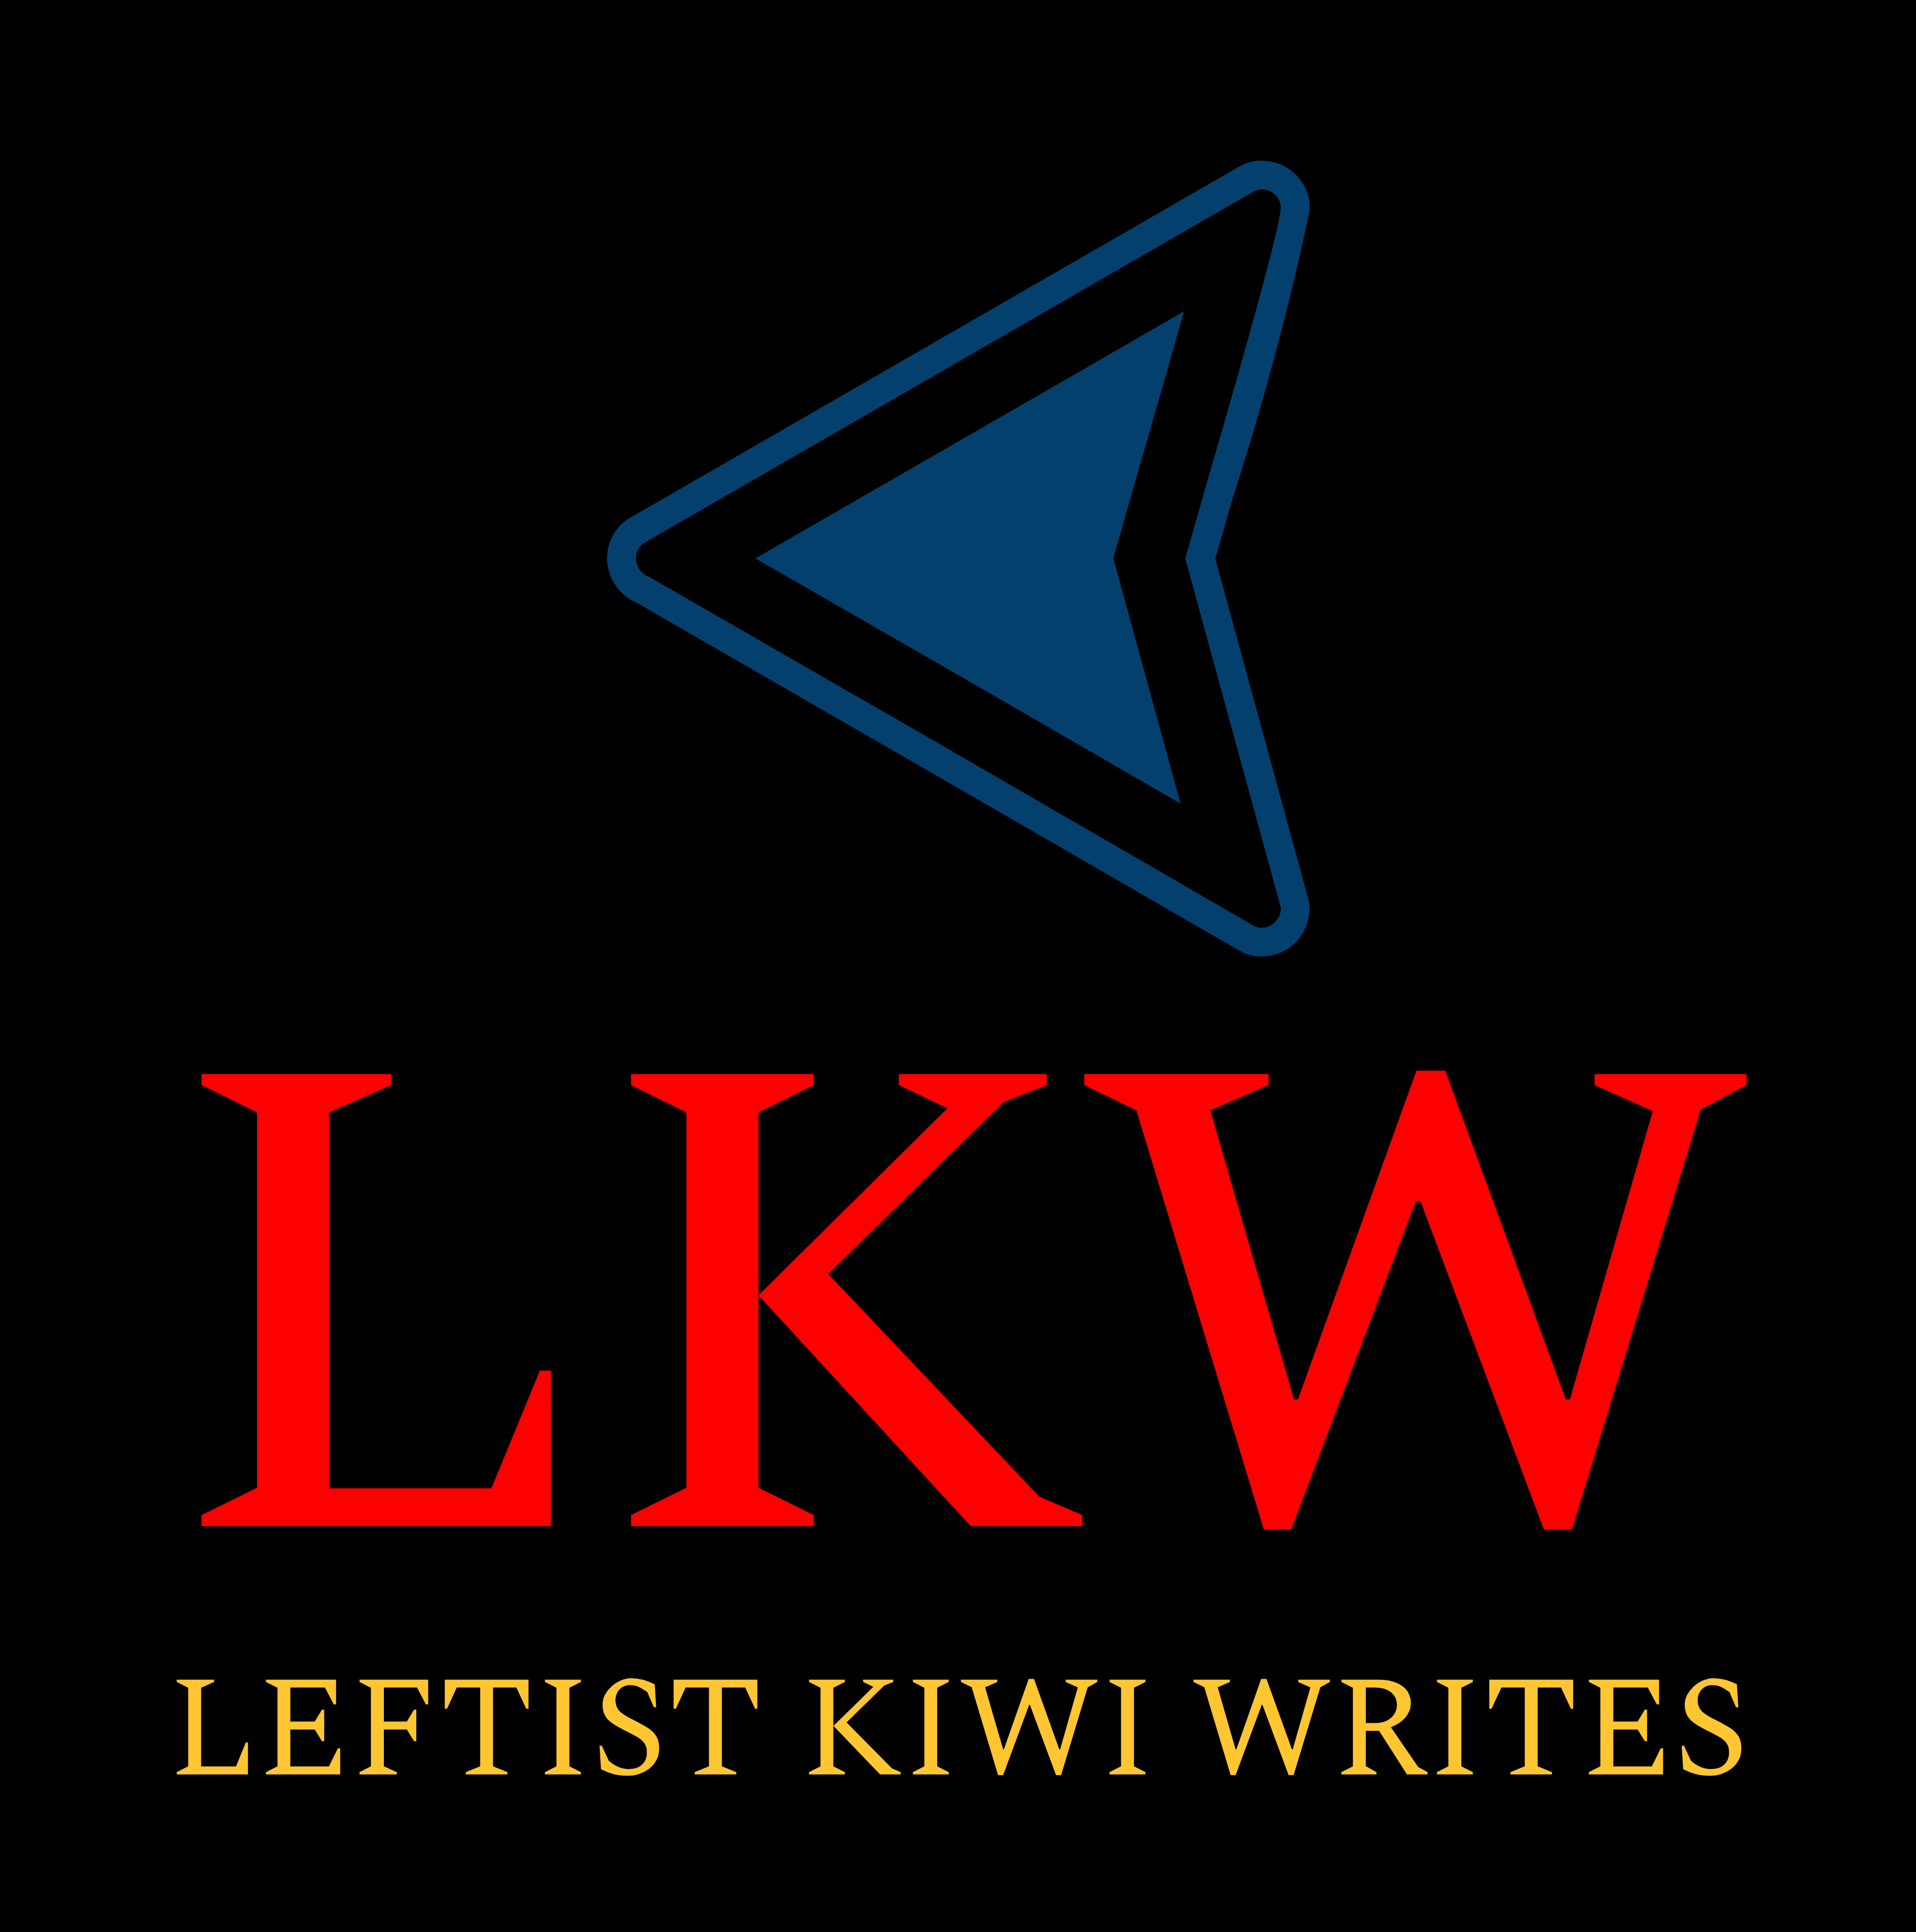 Leftist Kiwi Writes